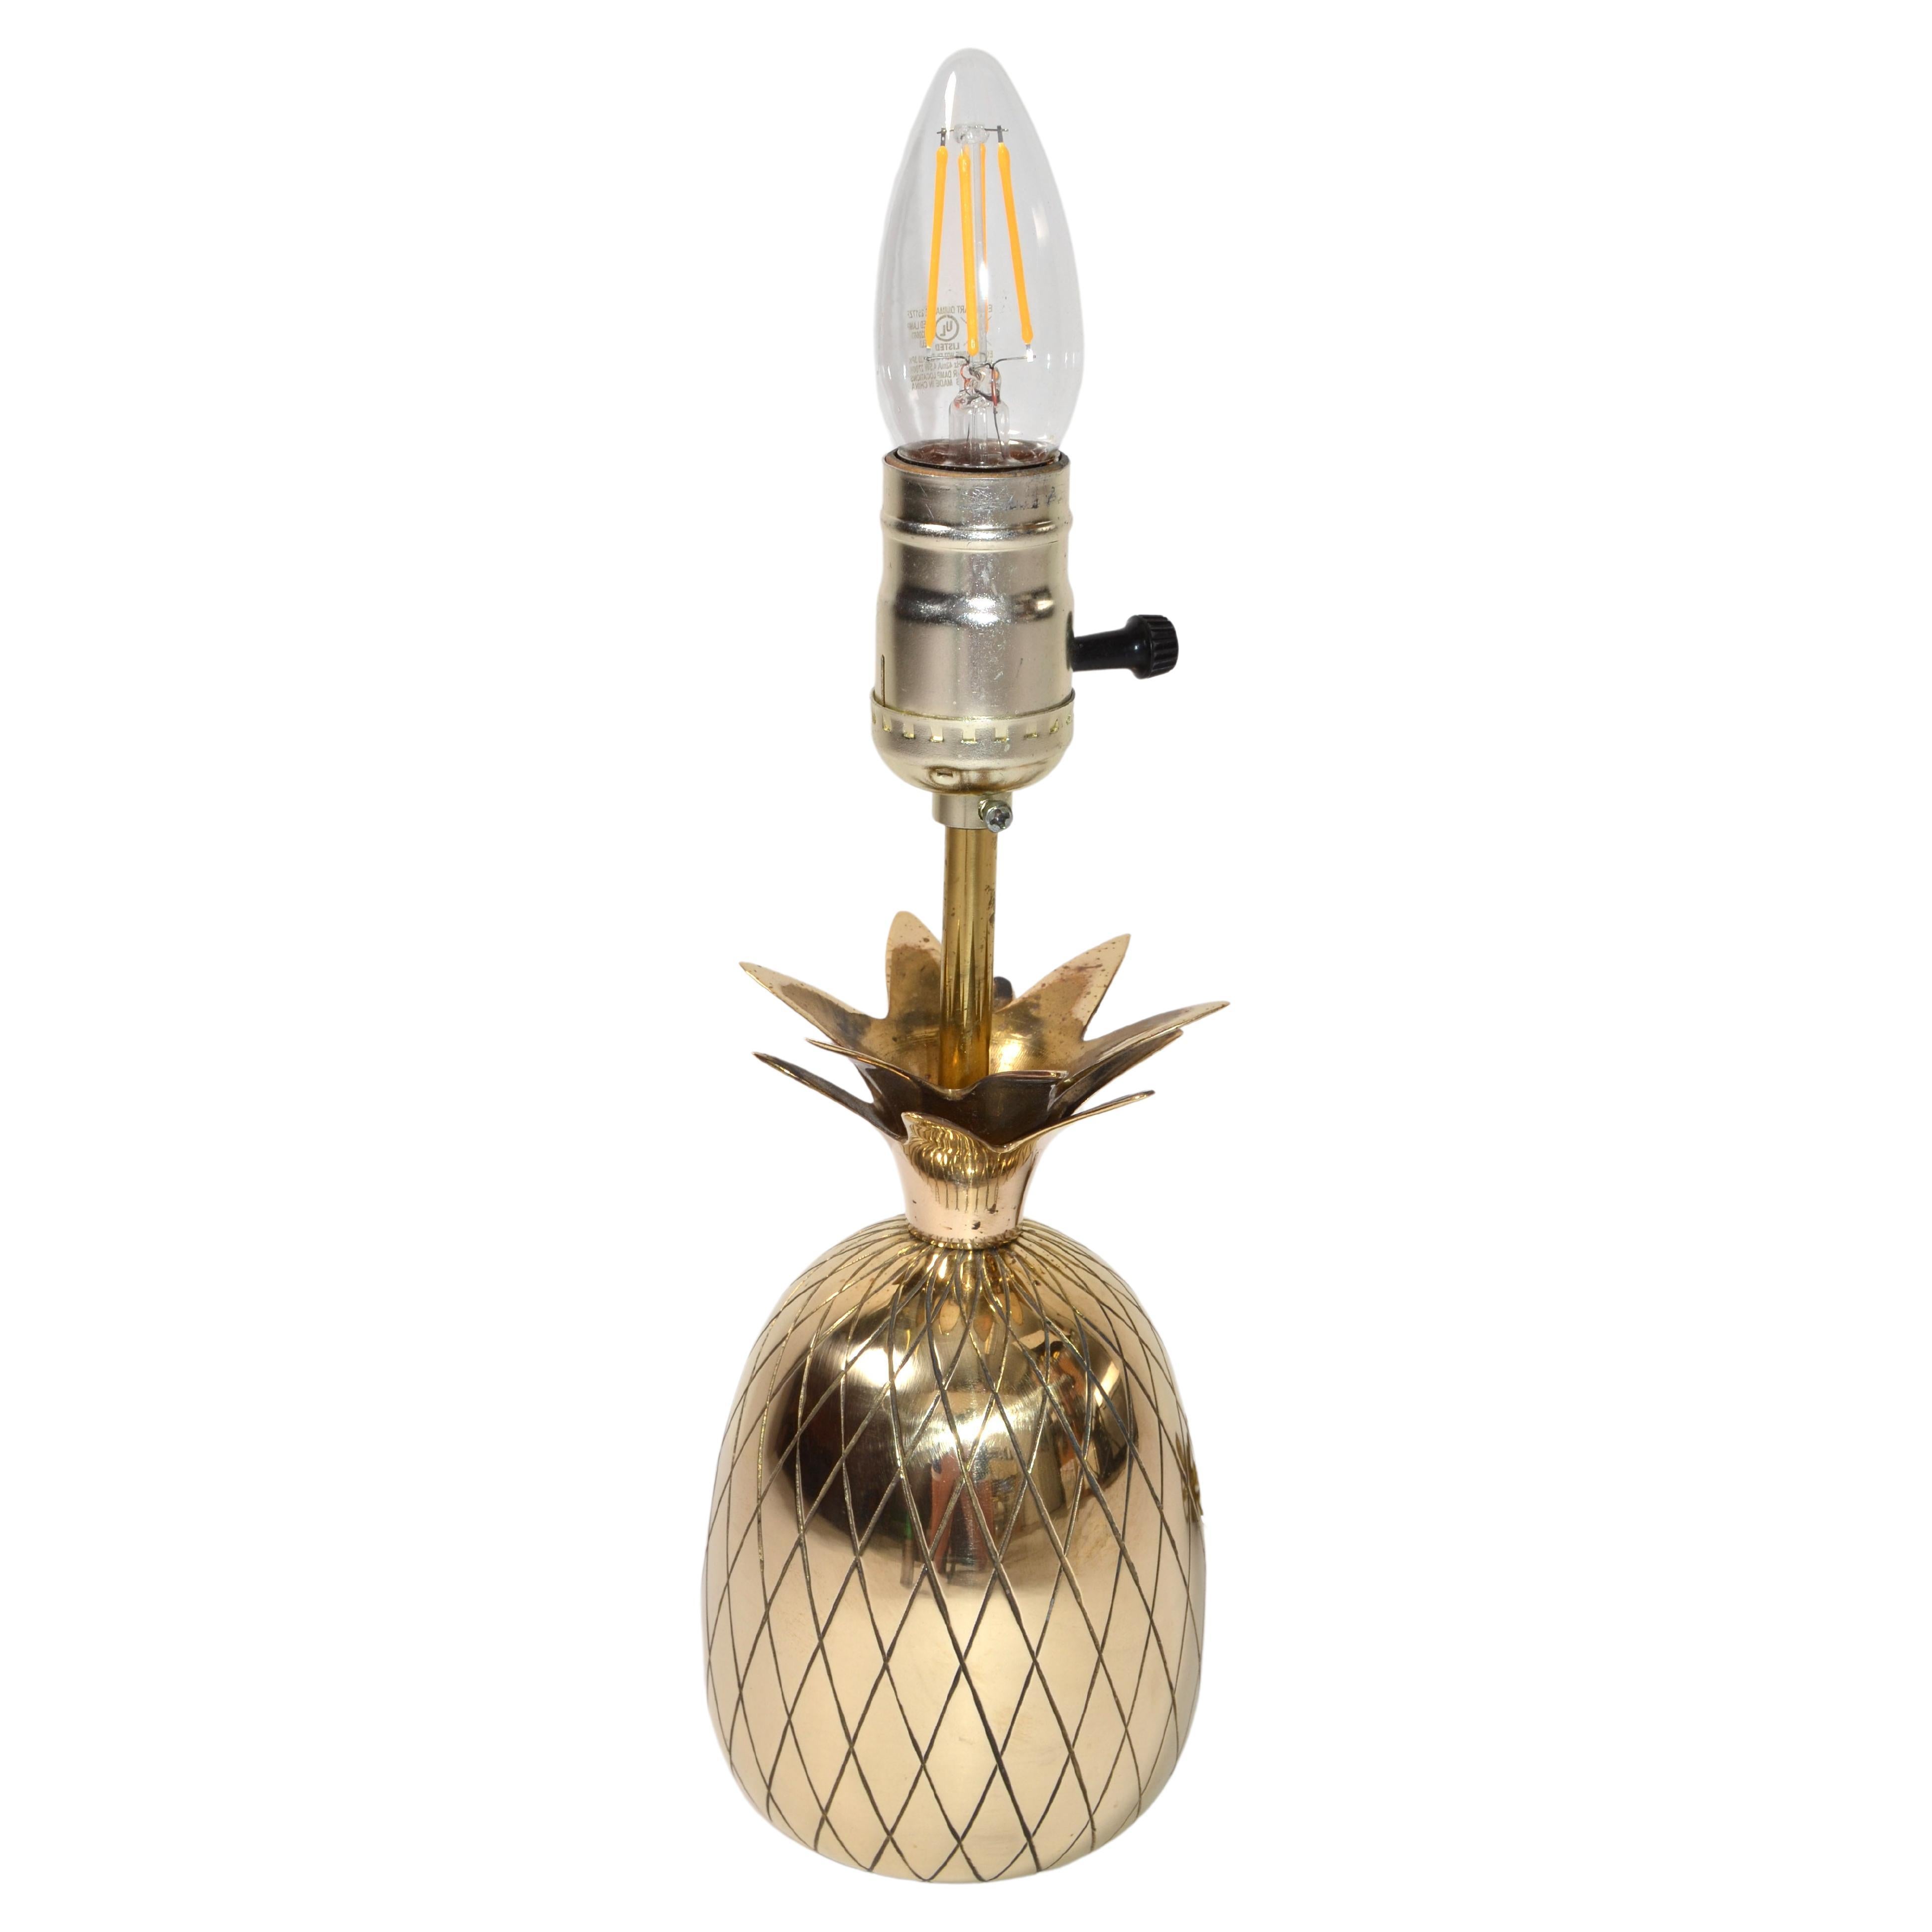 Sculptural Hollywood Regency Polished Bronze Pineapple Table Lamp Bedside Light For Sale